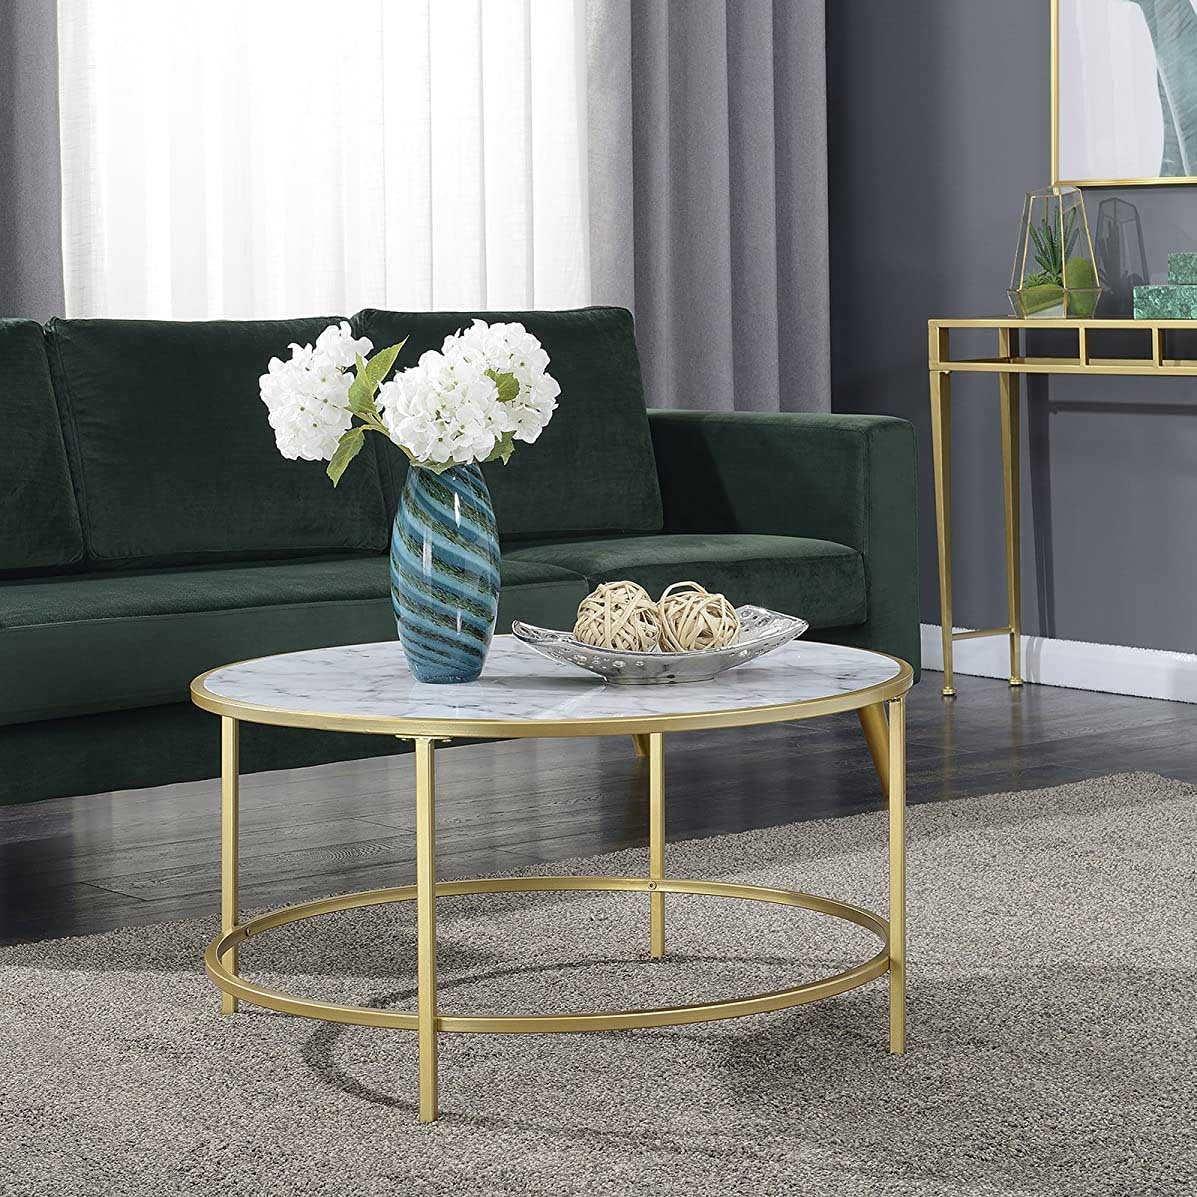 ຜູ້ຜະລິດຜູ້ຜະລິດຂາຍສົ່ງ Round Marble Top Gold Metal Coffee Table Modern Luxury Design for Living Room